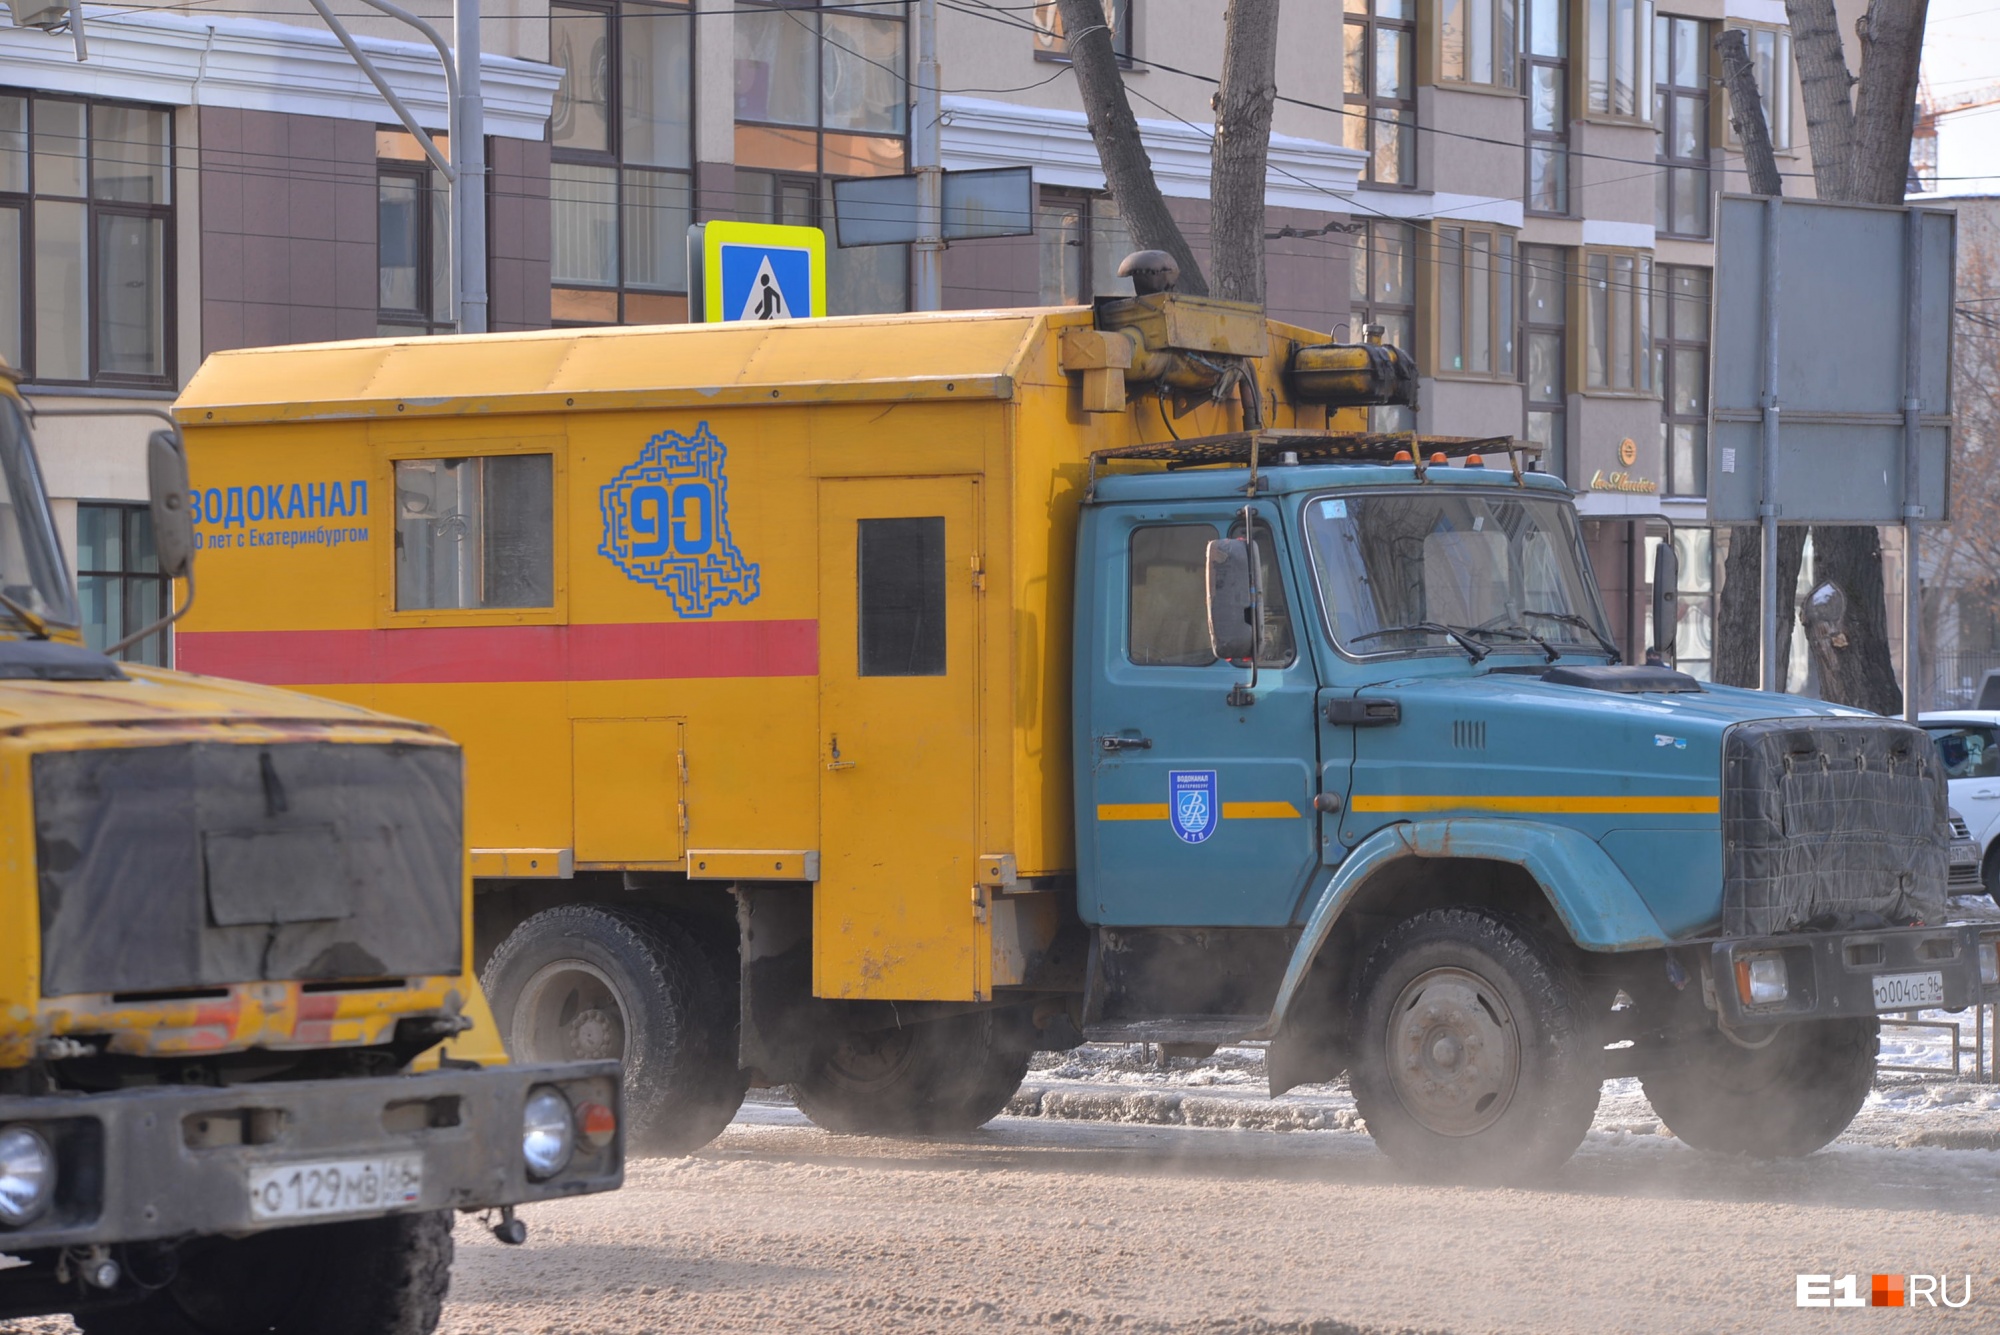 Стало известно, какие улицы Екатеринбурга перекопают ради замены труб. Карта